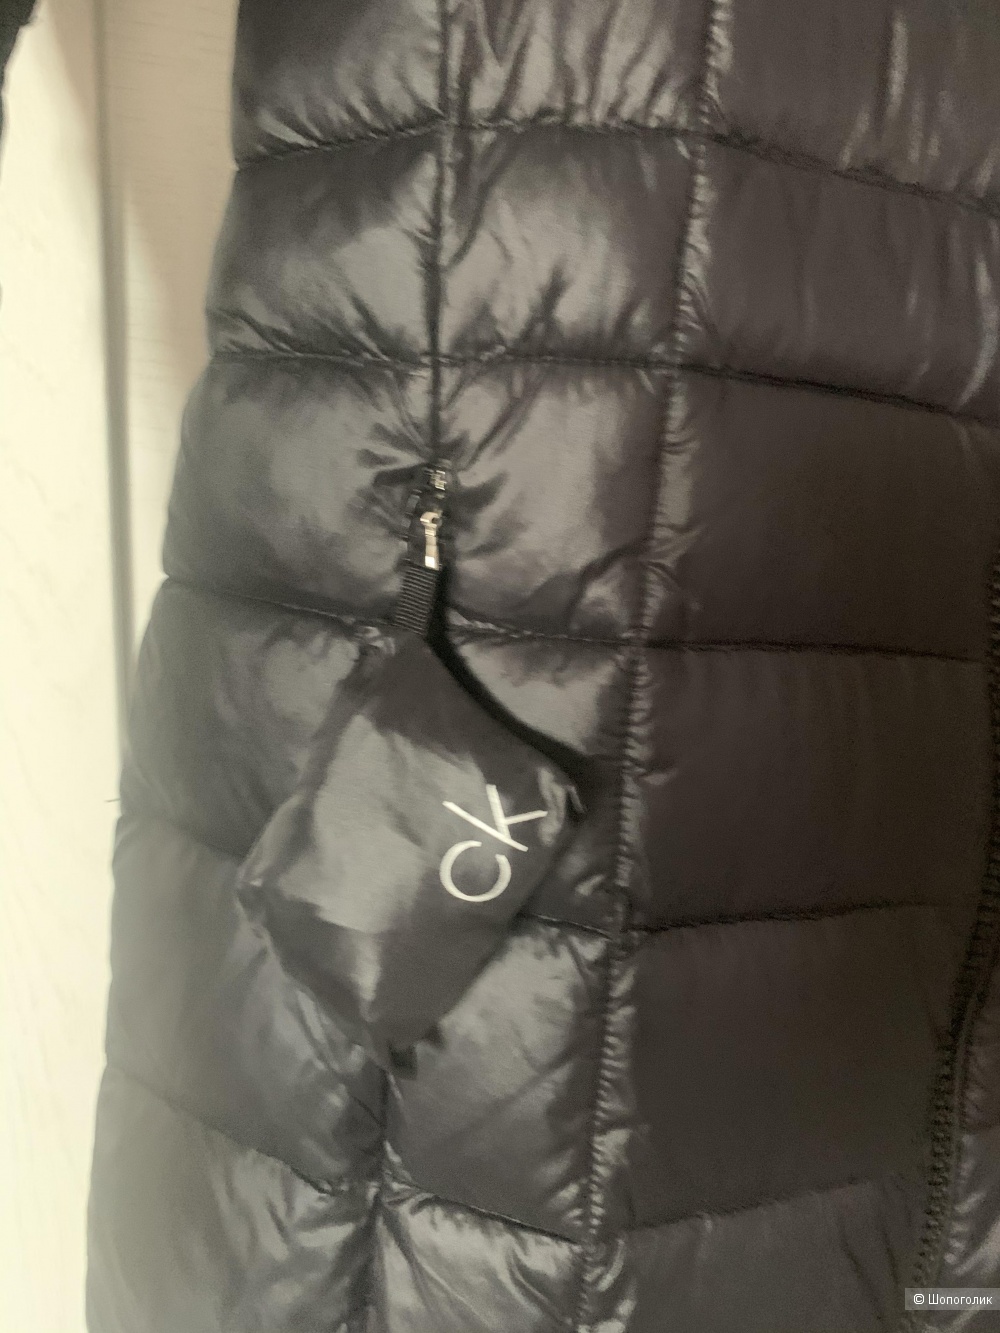 Пуховая куртка Calvin Klein, размер S